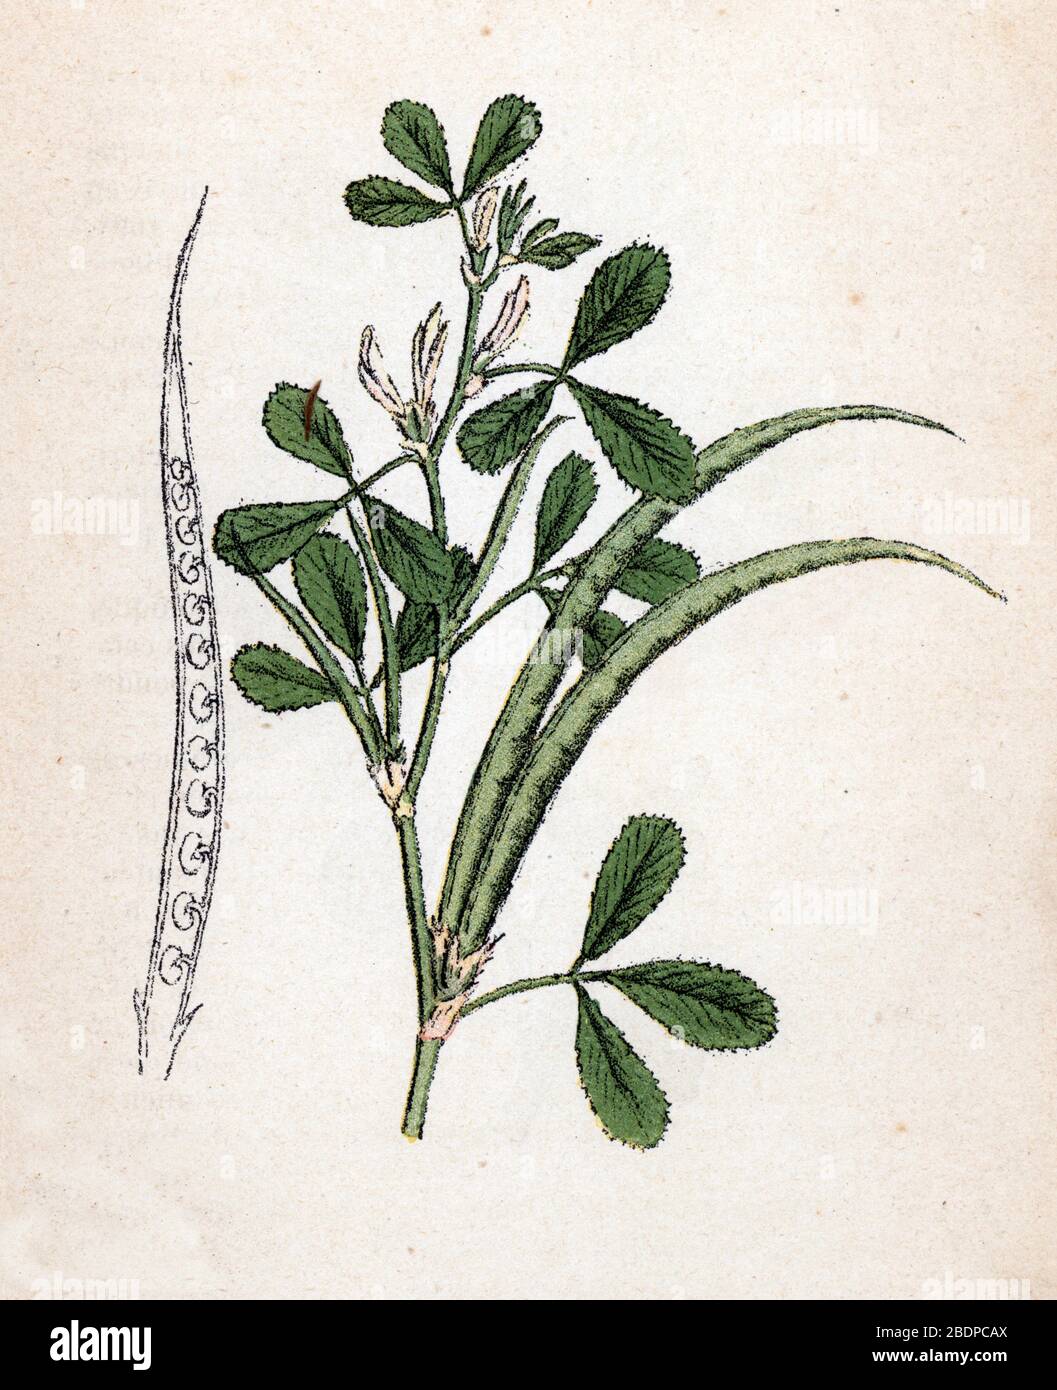 'Fenugrec' (Trigonella foenum-graecum) (Trigonelle ou Senegrain) (Fenugreek) Planche de botanique tiree de 'Atlas colorie des plantes medicinales' de Stock Photo